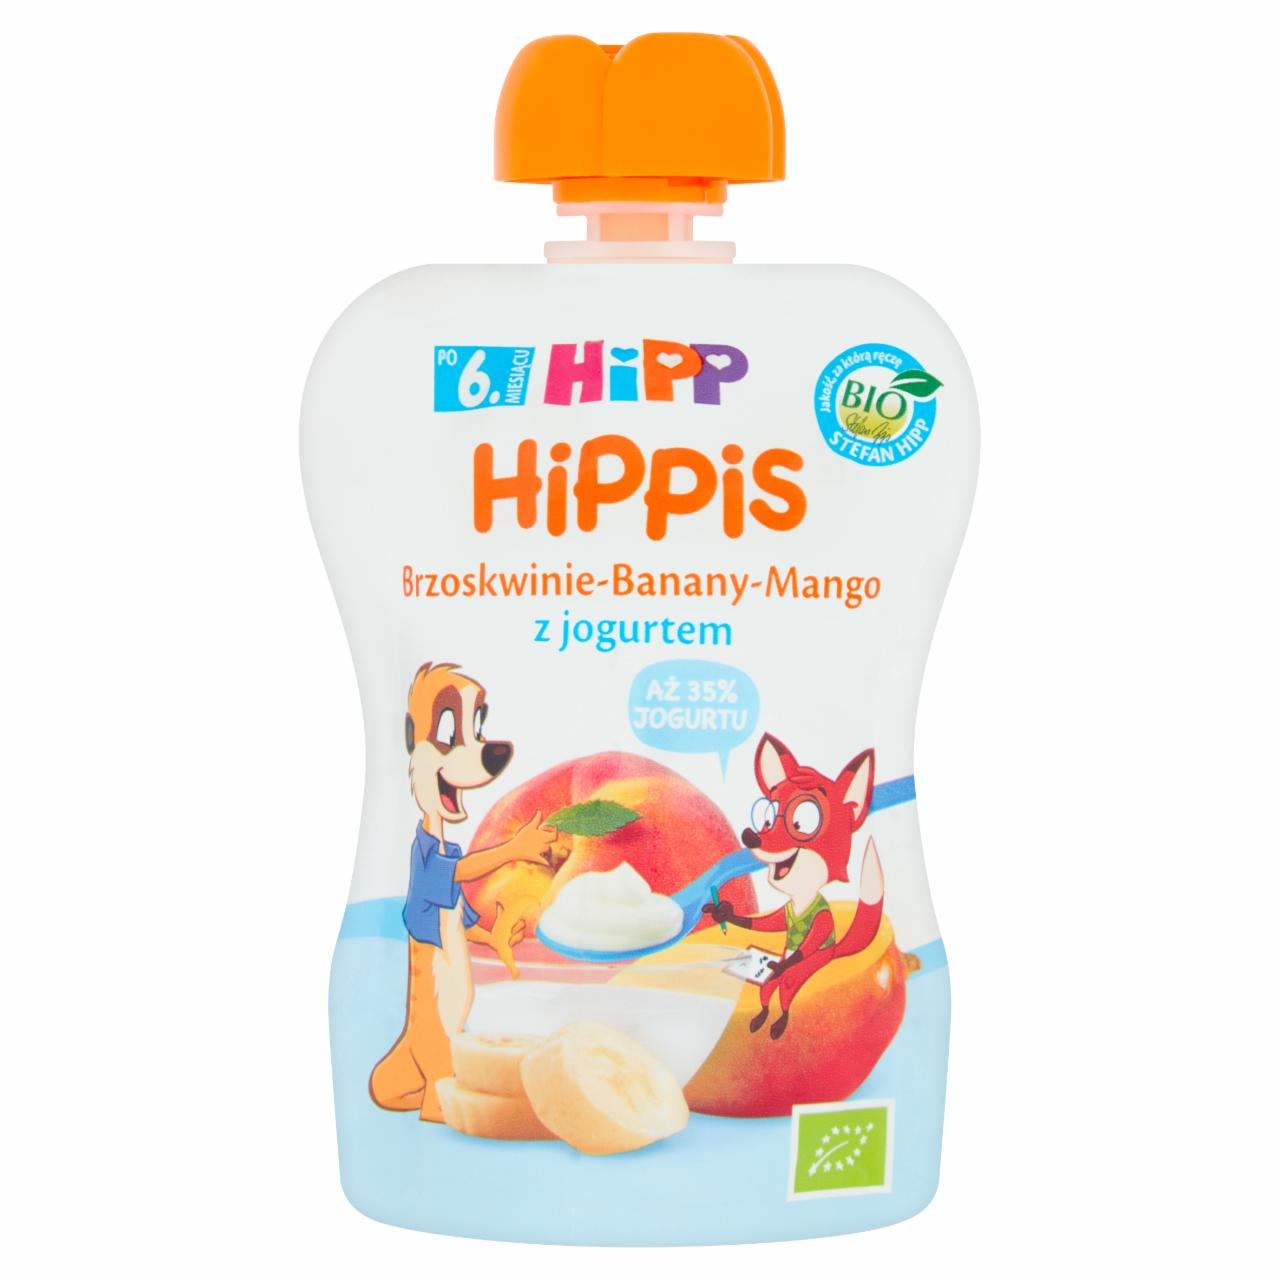 Zdjęcia - HiPP BIO HiPPiS Mus owocowy po 6. miesiącu brzoskwinie-banany-mango z jogurtem 90 g